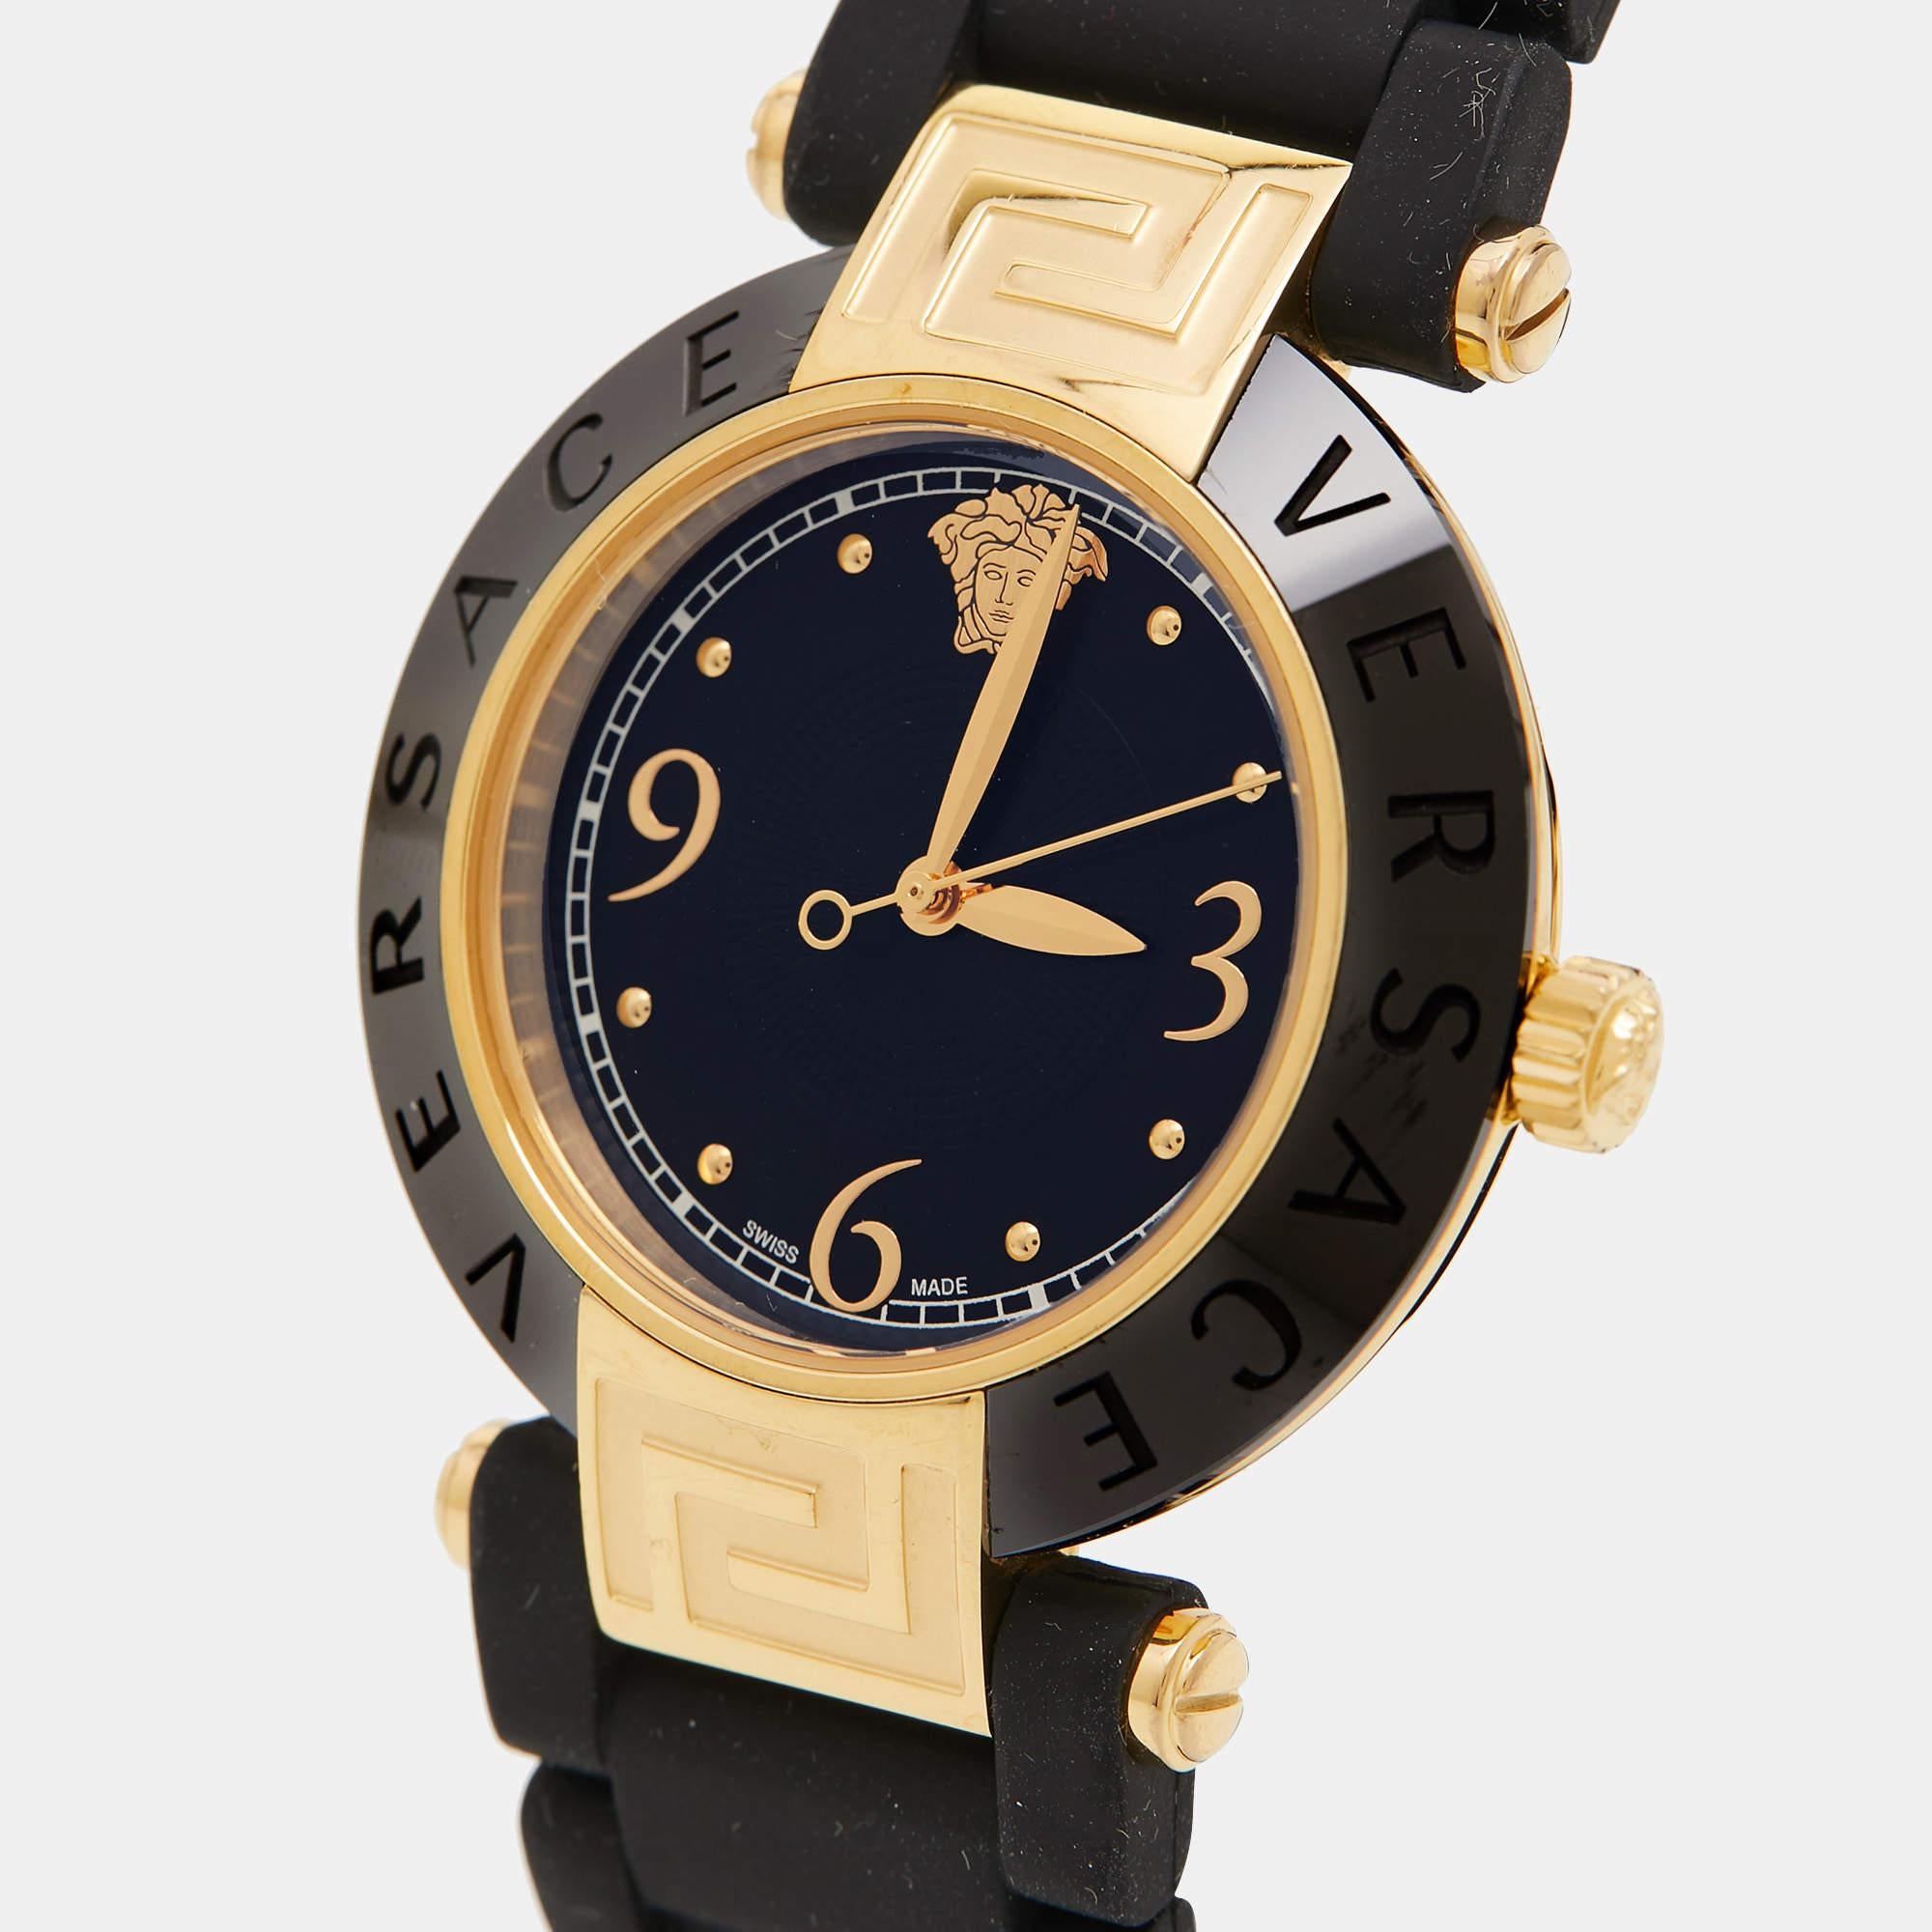 Laissez cette montre-bracelet de créateur vous accompagner avec aisance et dans un style luxueux. Magnifiquement fabriquée à l'aide de matériaux de qualité supérieure, cette montre de marque authentique est conçue pour être un accessoire remarquable